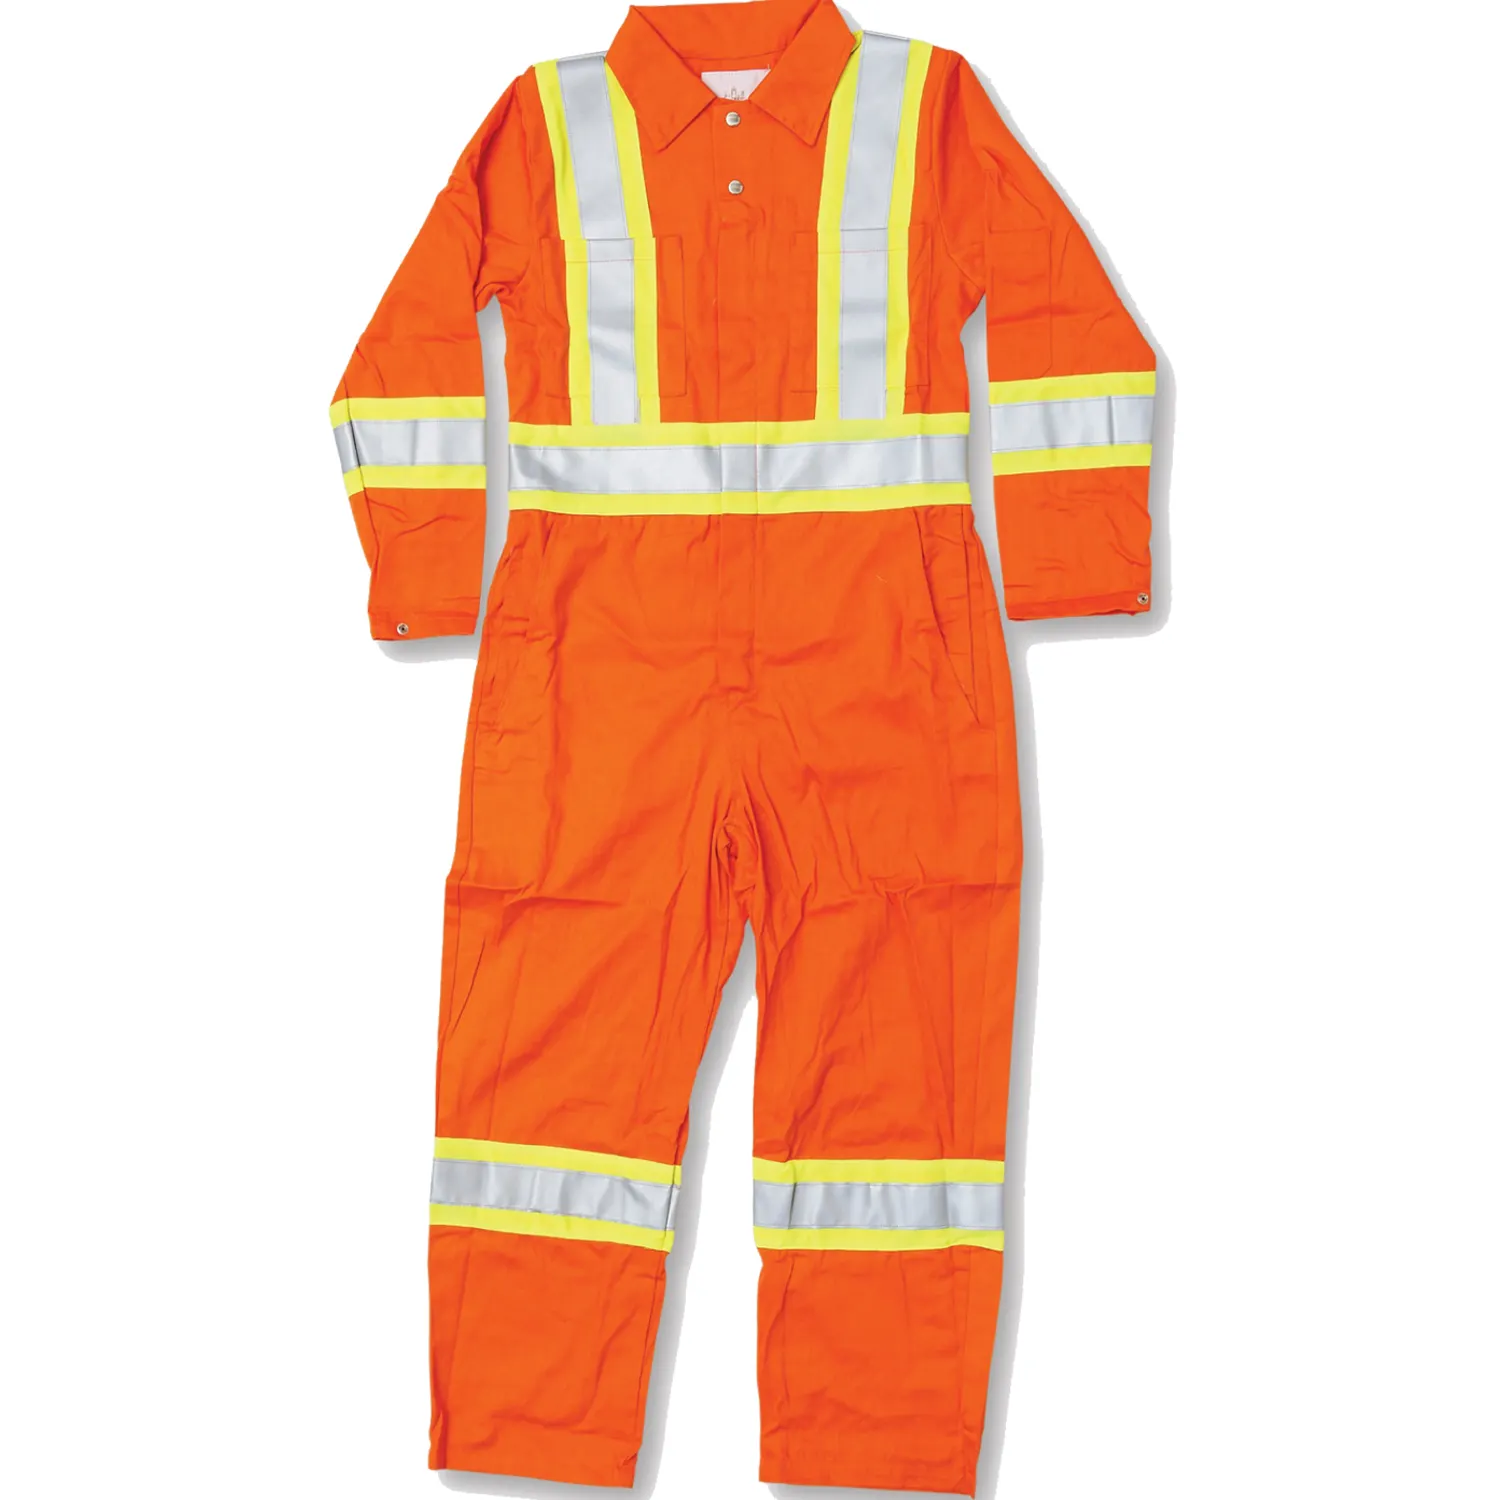 Özel hi-vis yansıtıcı güvenlik kıyafeti yangın geciktirici ceket endüstriyel iş giysisi mekaniği su geçirmez tulum genel üniforma